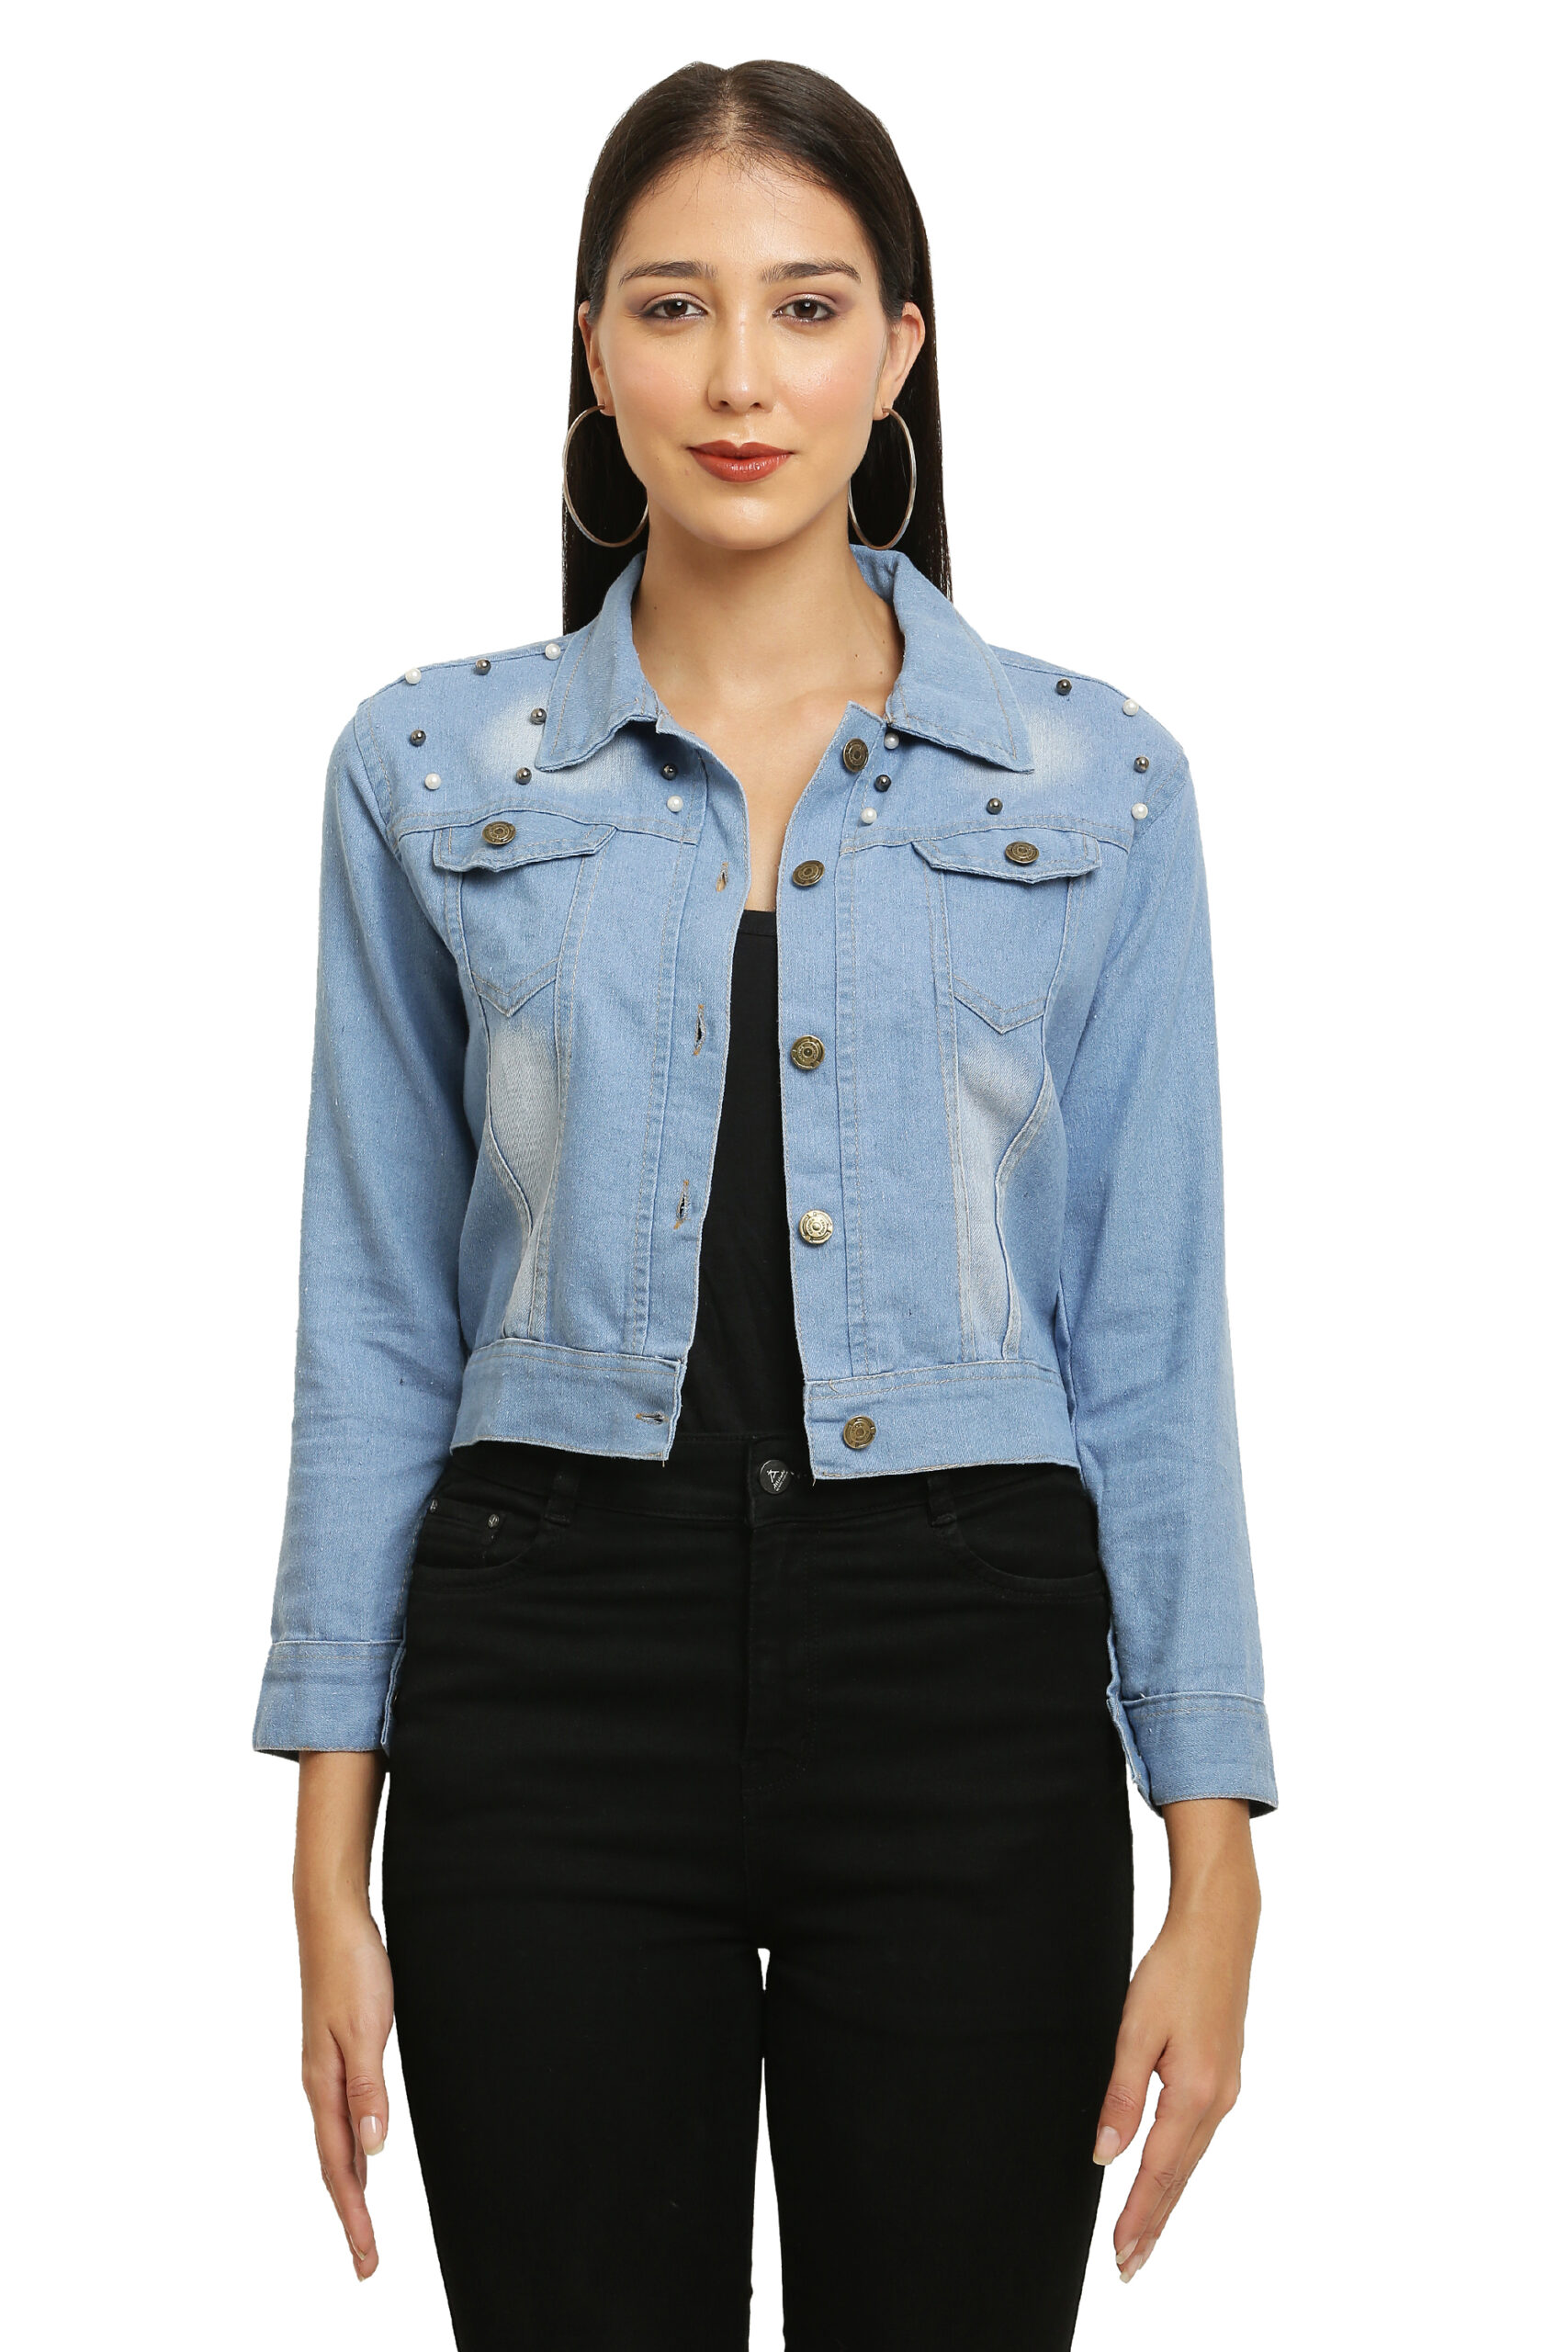 Nudie Jeans Nudie Denim Jacket Conny Black On Blue Wash, $233 | Asos |  Lookastic